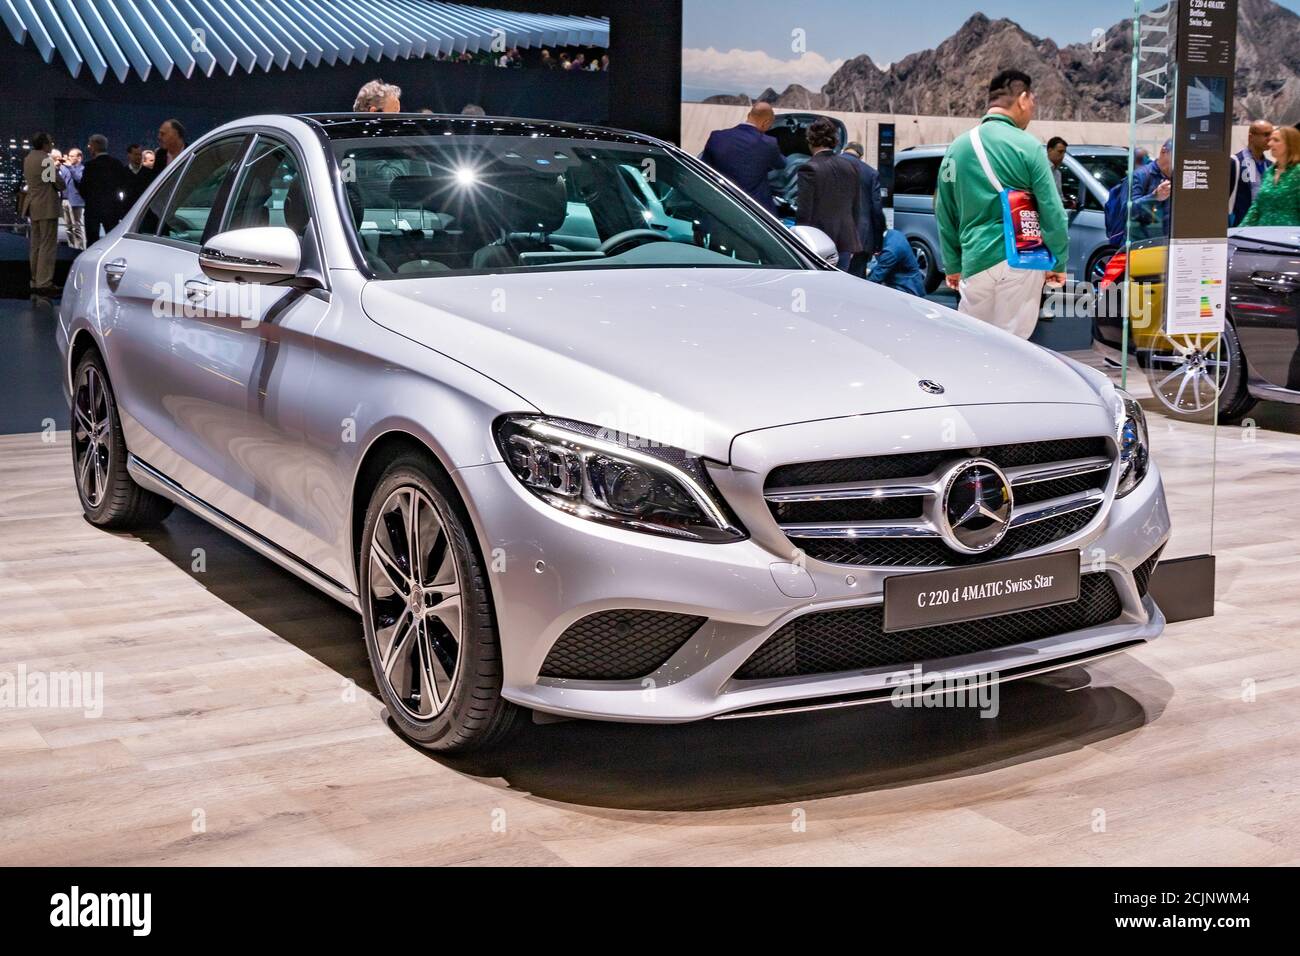 Mercedes Benz C220 Stockfotos und -bilder Kaufen - Alamy